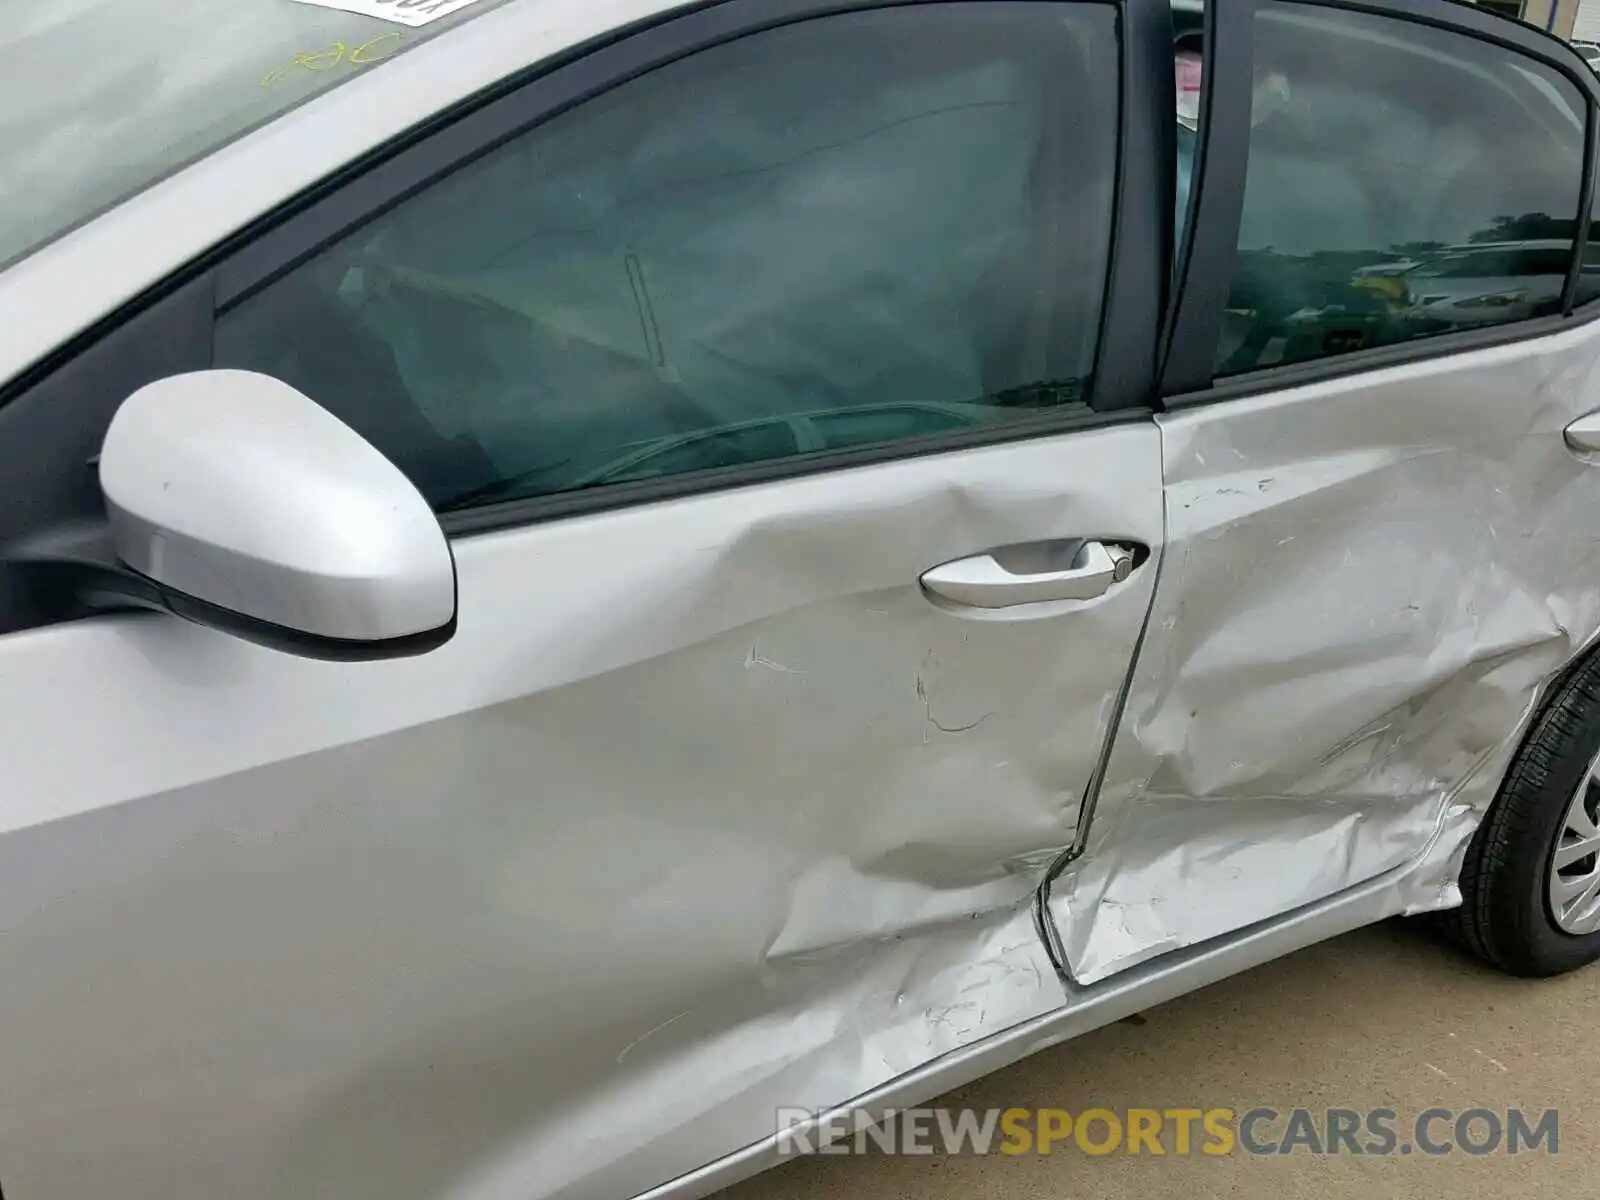 10 Photograph of a damaged car 5YFBURHE0KP943791 TOYOTA COROLLA 2019